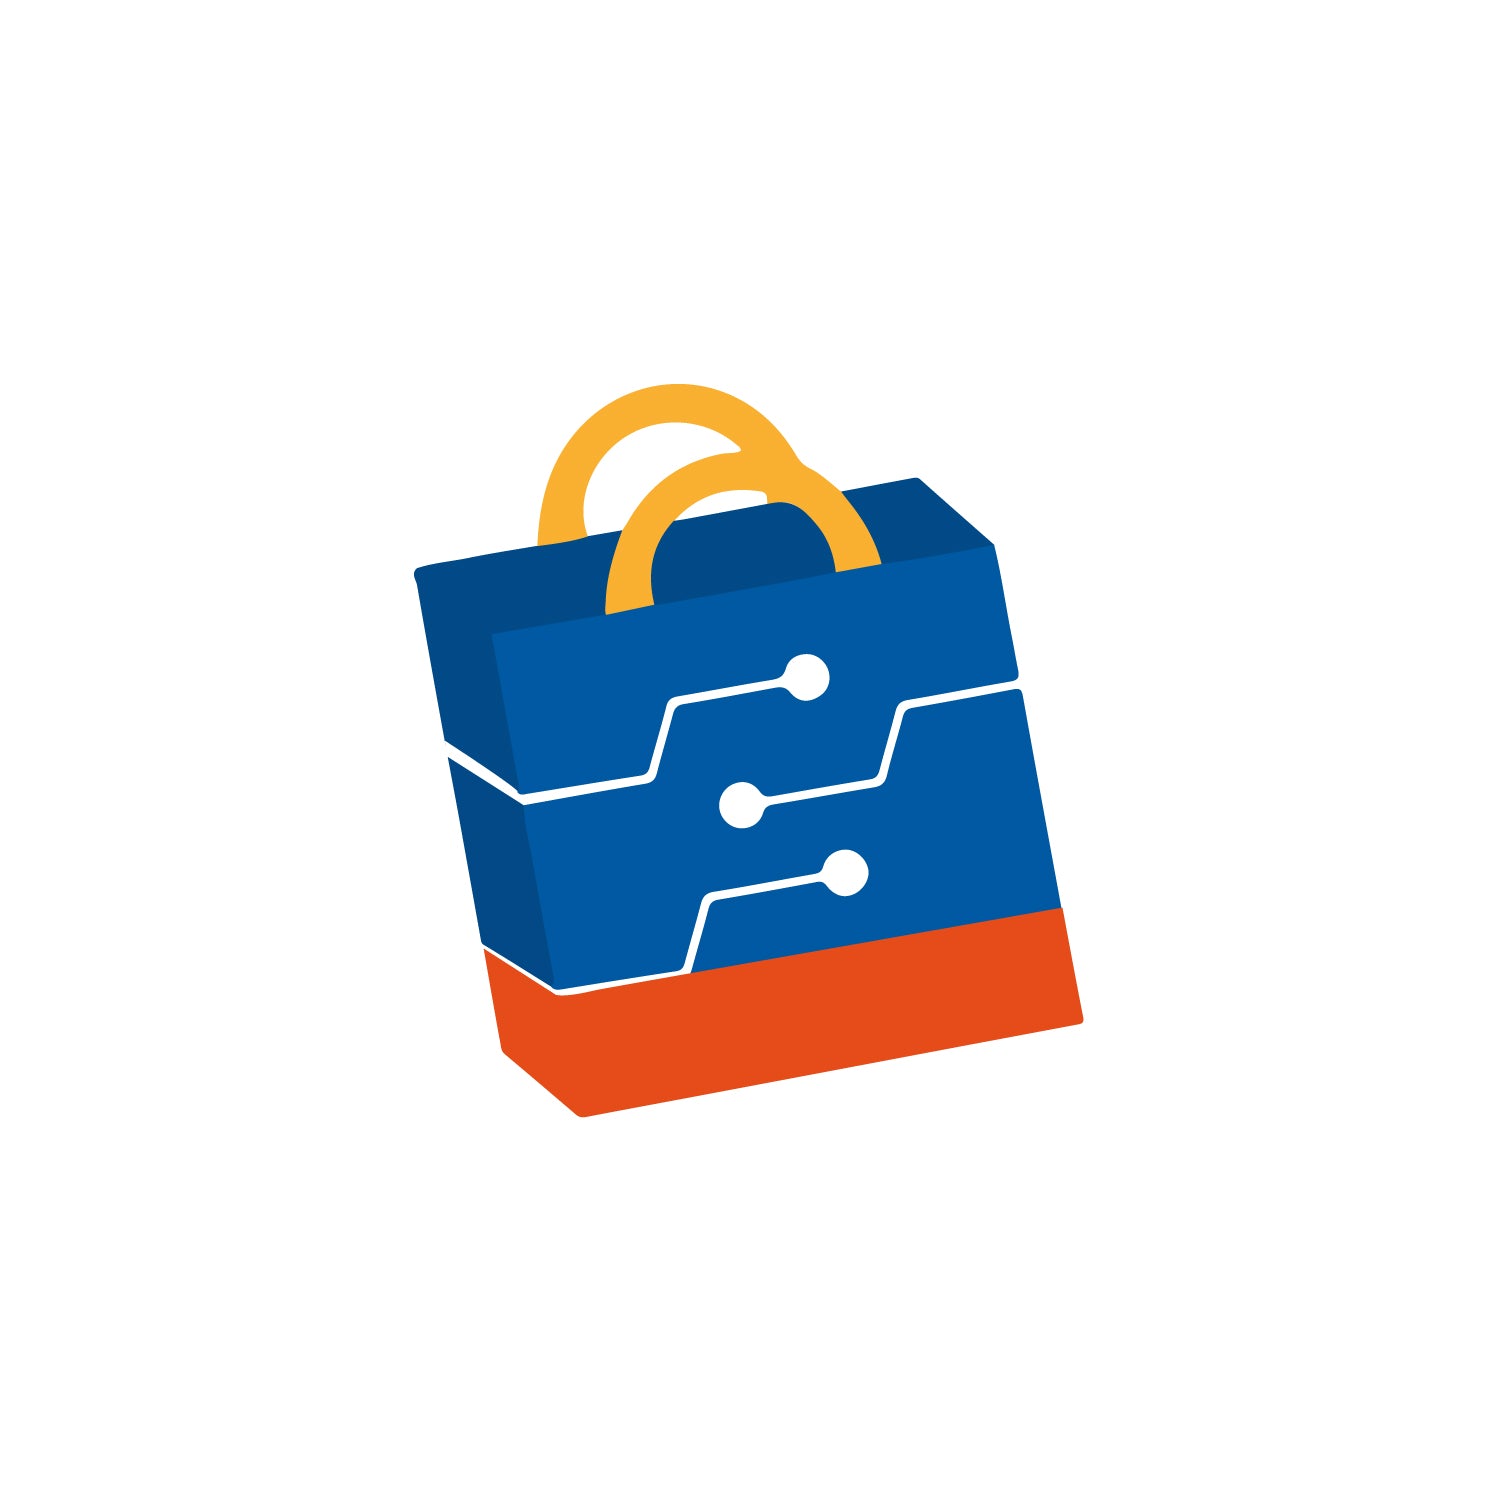 cyber-plaza-logo-tiendas_2015c7bc-75b8-4897-a257-08d373ed297e.jpg